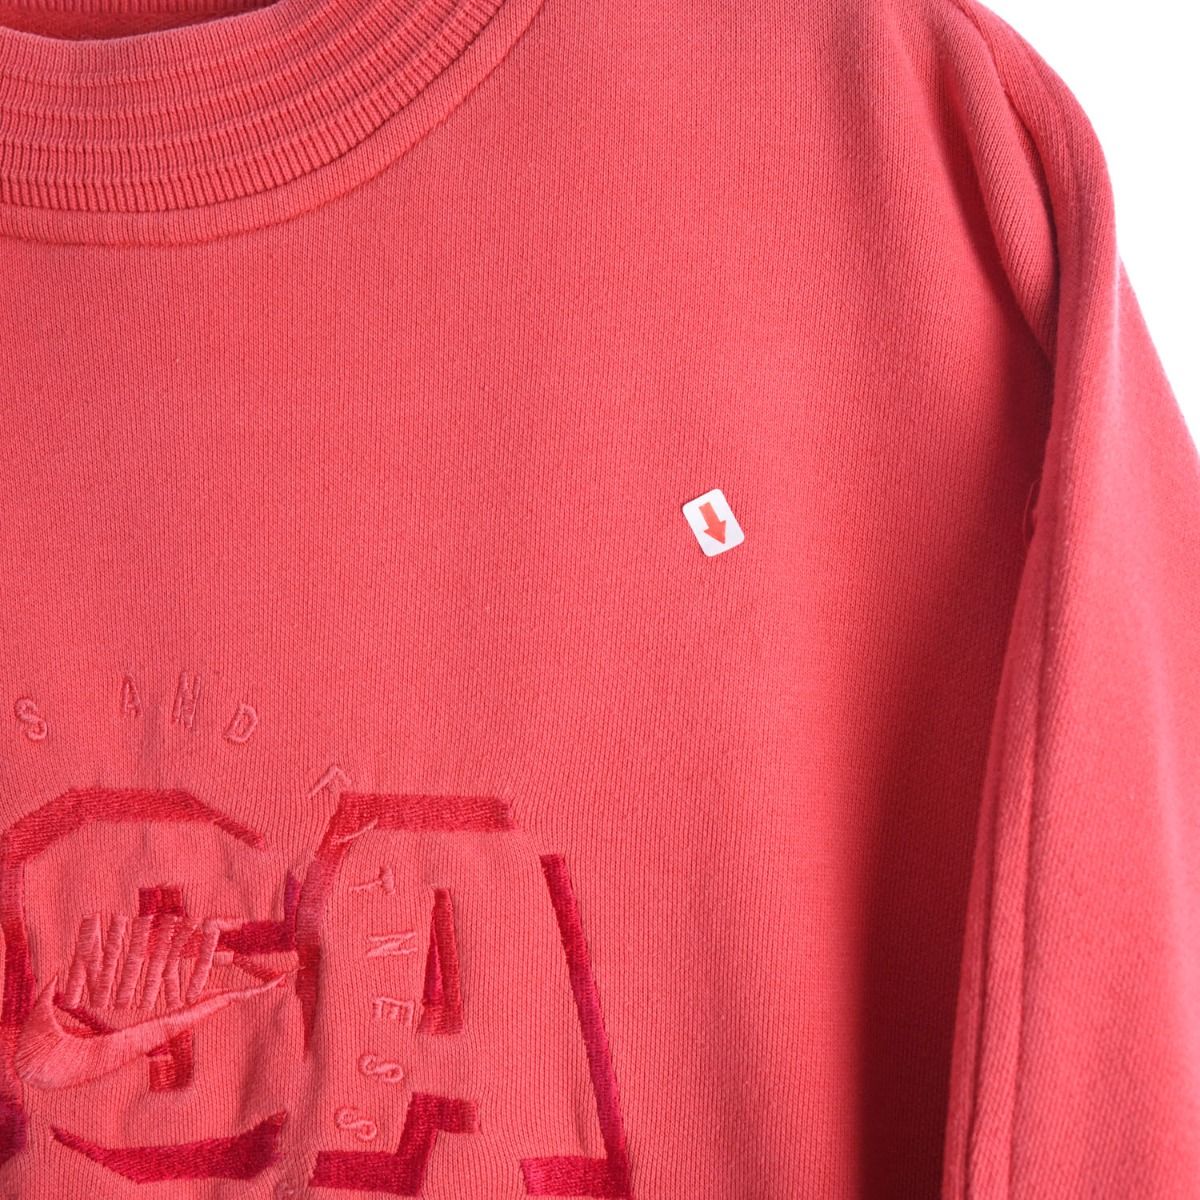 Nike Early 1990s USA Sweatshirt